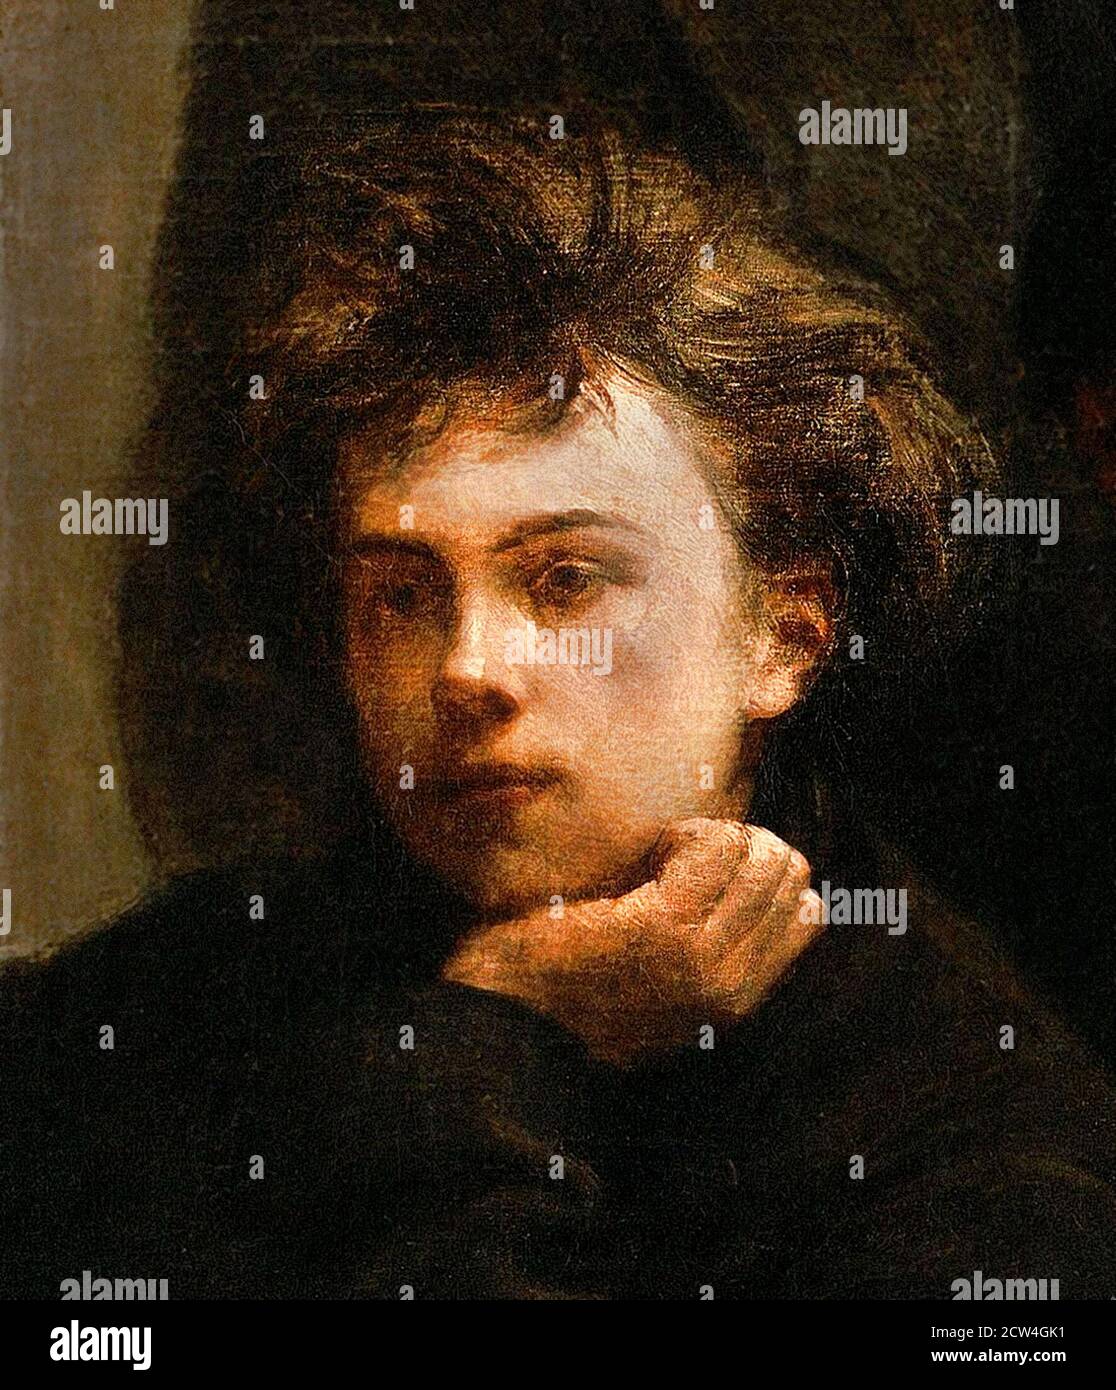 Arthur Rimbaud. Porträt des französischen Dichters Jean Nicolas Arthur Rimbaud (1854-1891), ca. 18 Jahre alt, von Henri Fantin-Latour, Öl auf Leinwand, 1872. Detail aus einem größeren Gemälde 'Coin de Table'. Stockfoto